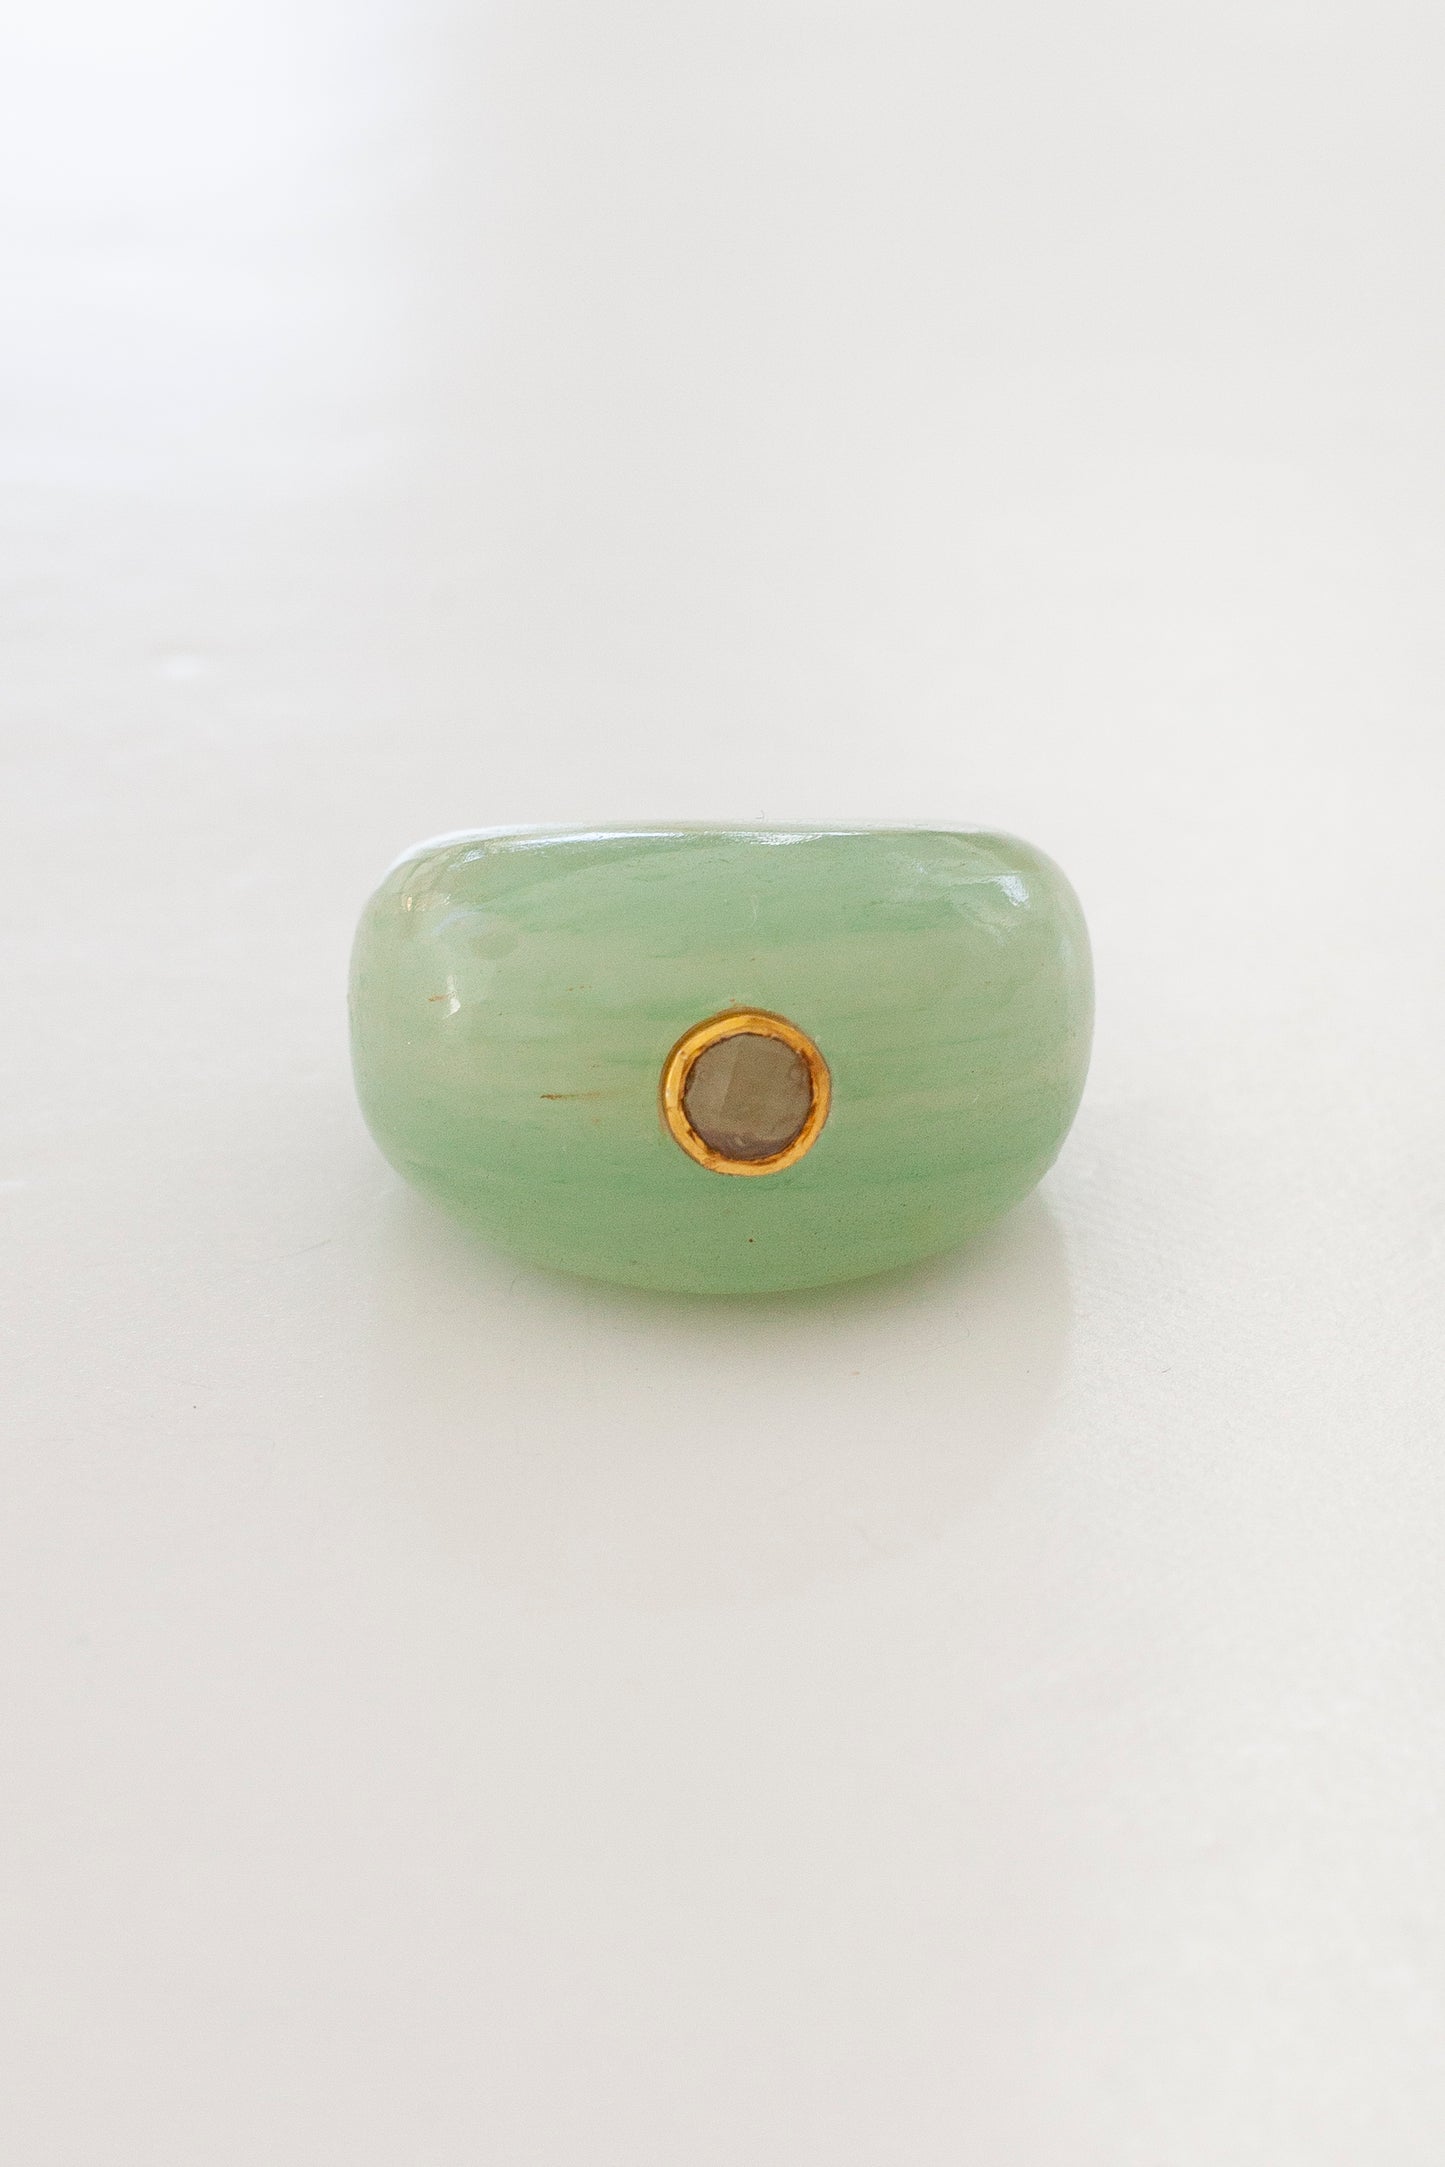 Cora Ring (Mint Green Quartz)